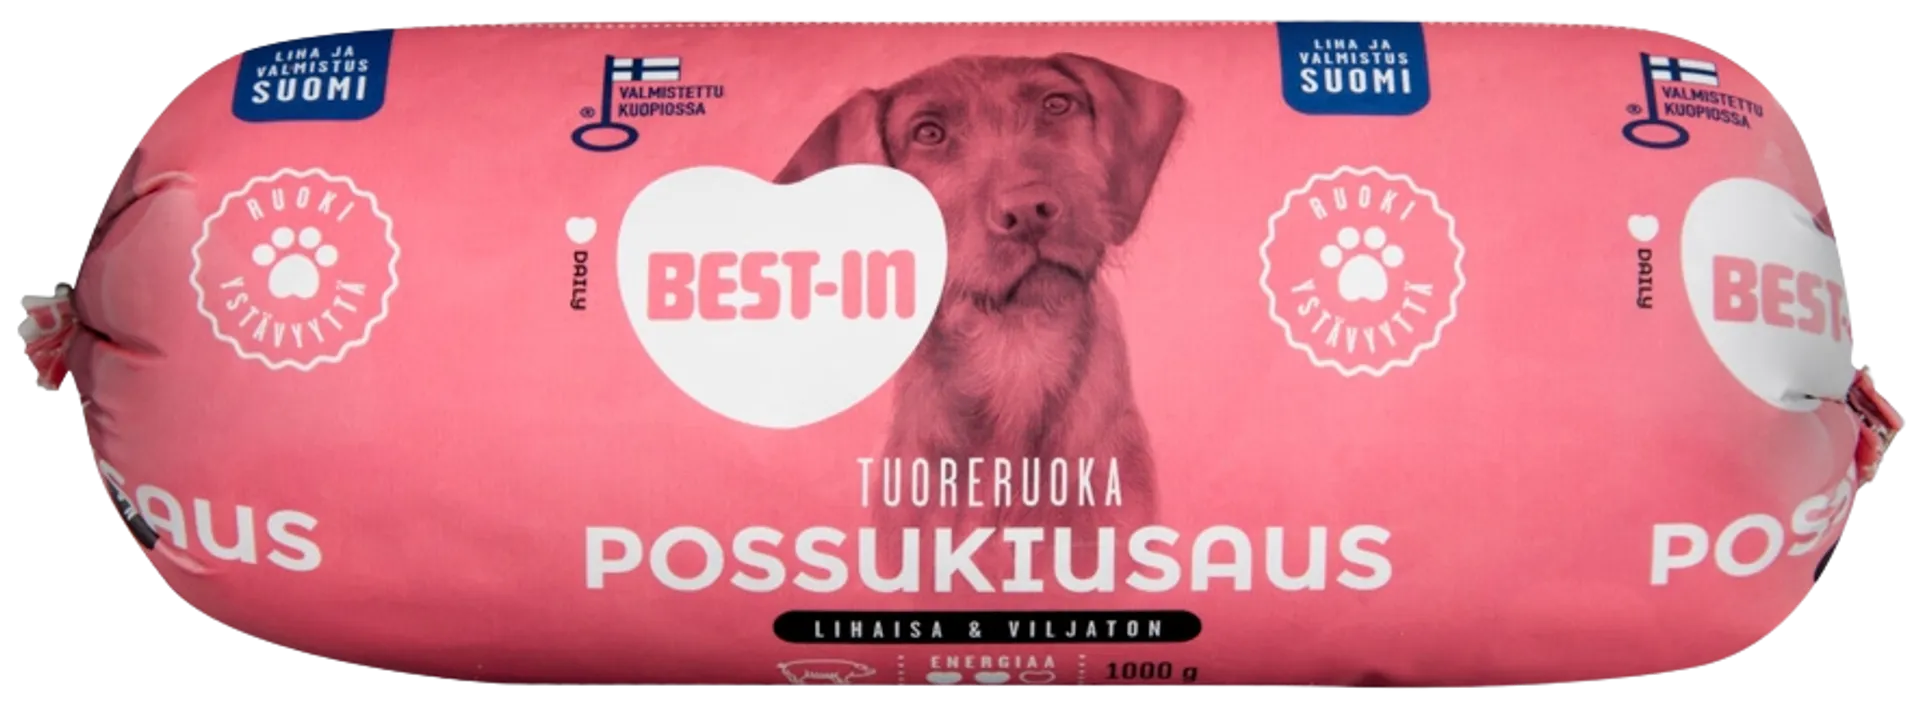 Best-In Possukiusaus Koiran Tuoreruoka 1000g